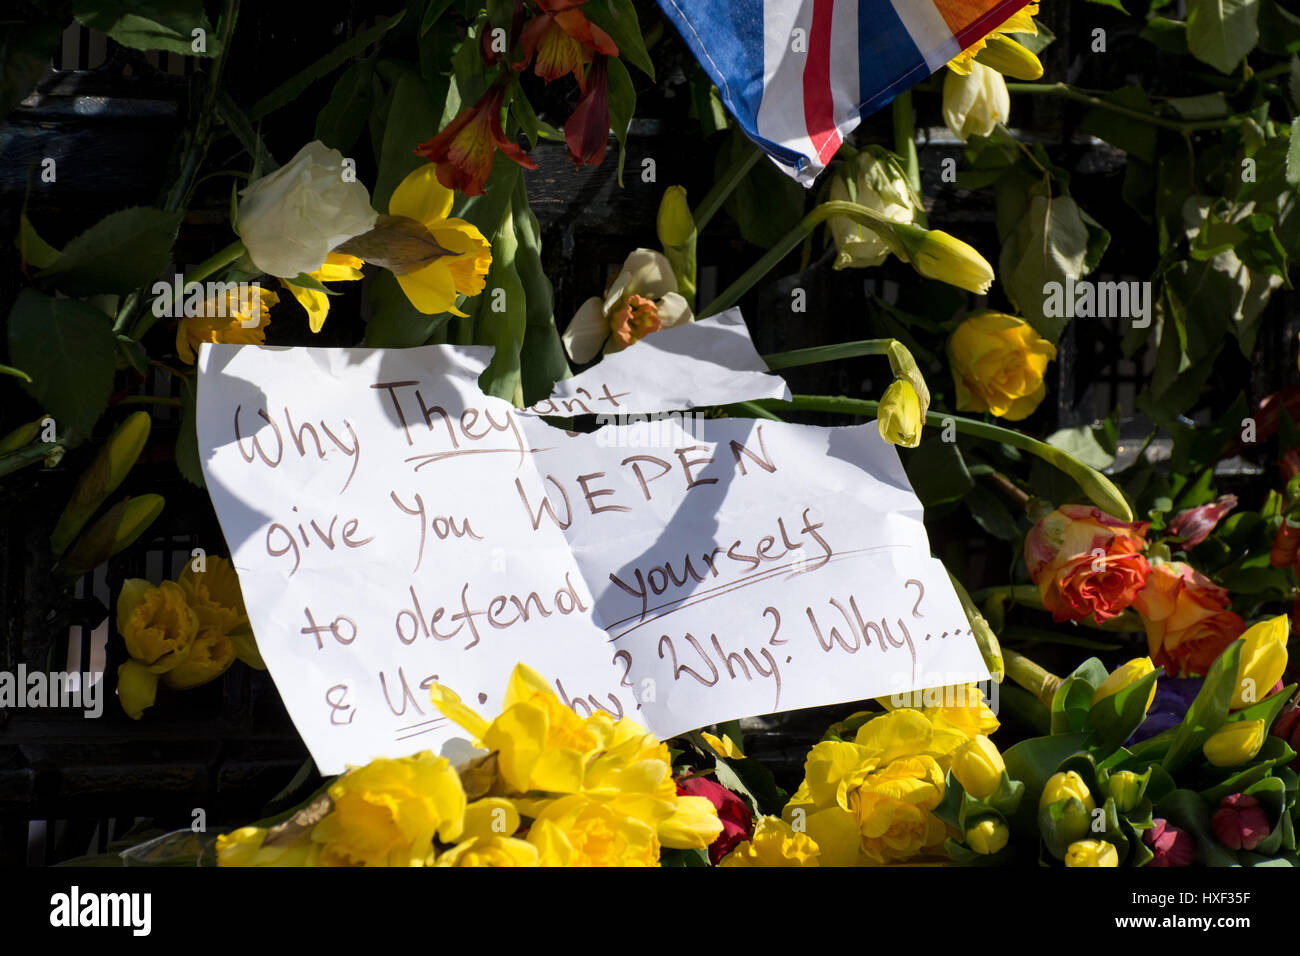 Note laissée sur les fleurs se référant à PC Keith Palmer et rencontré les agents de police : "pourquoi elles ne vous donneront pas wepen pour vous défendre et nous. Pourquoi ? Pourquoi ? Pourquoi ?" Banque D'Images